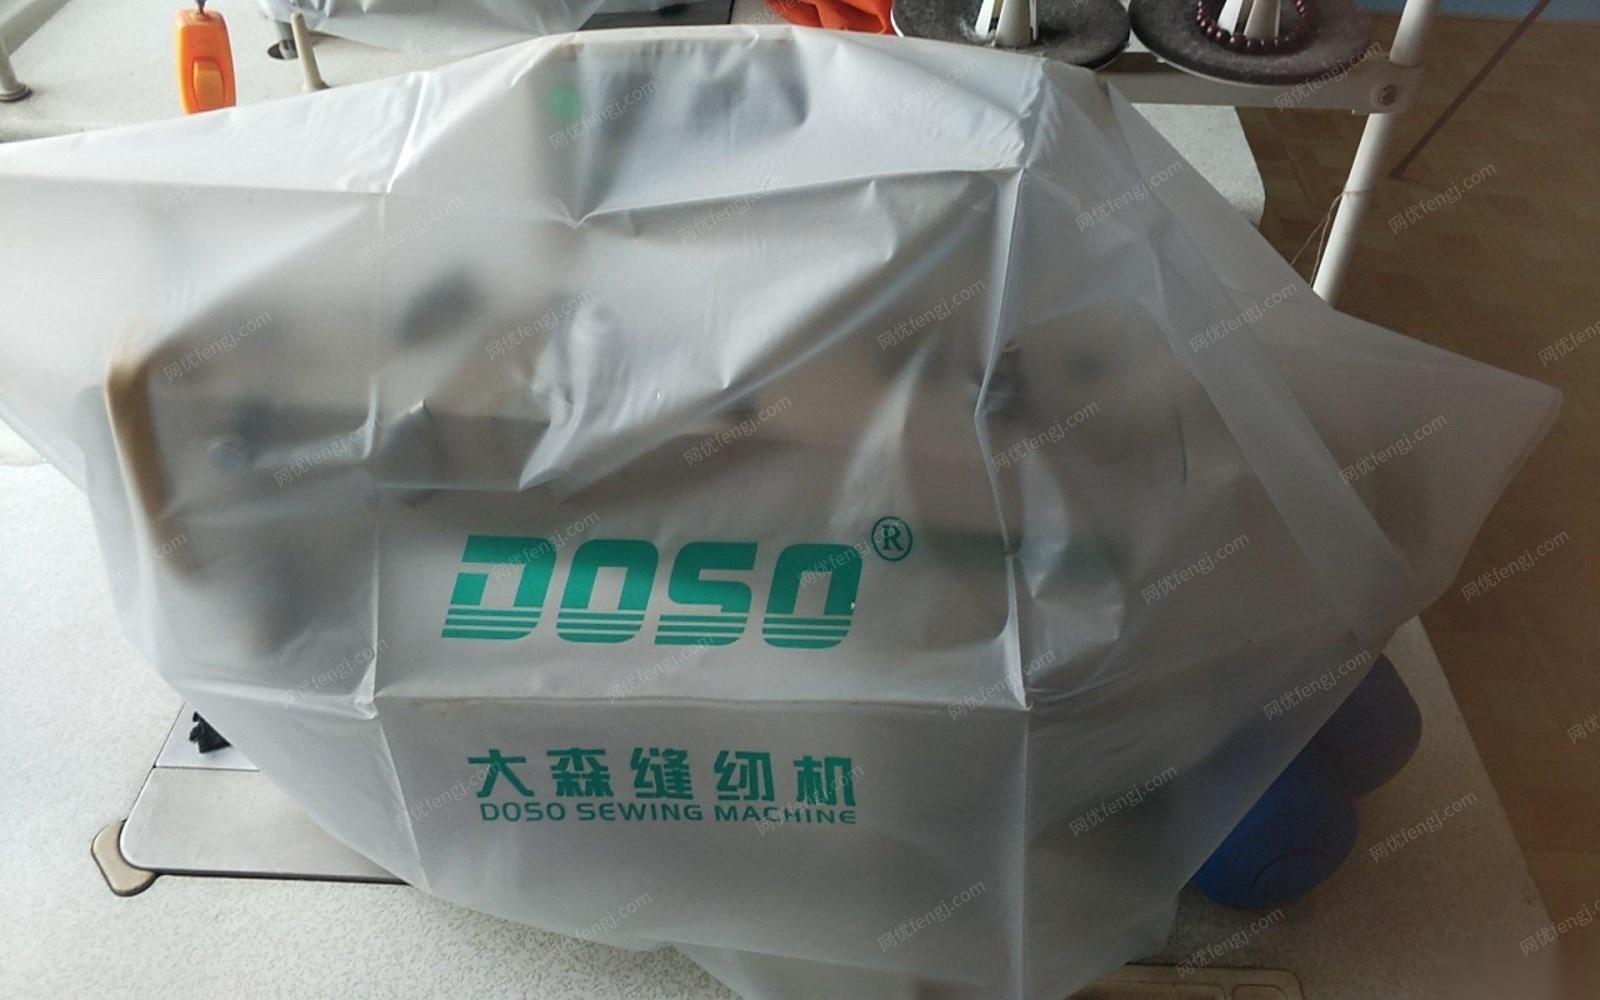 重庆江北区服装厂缝纫机出售 55000元